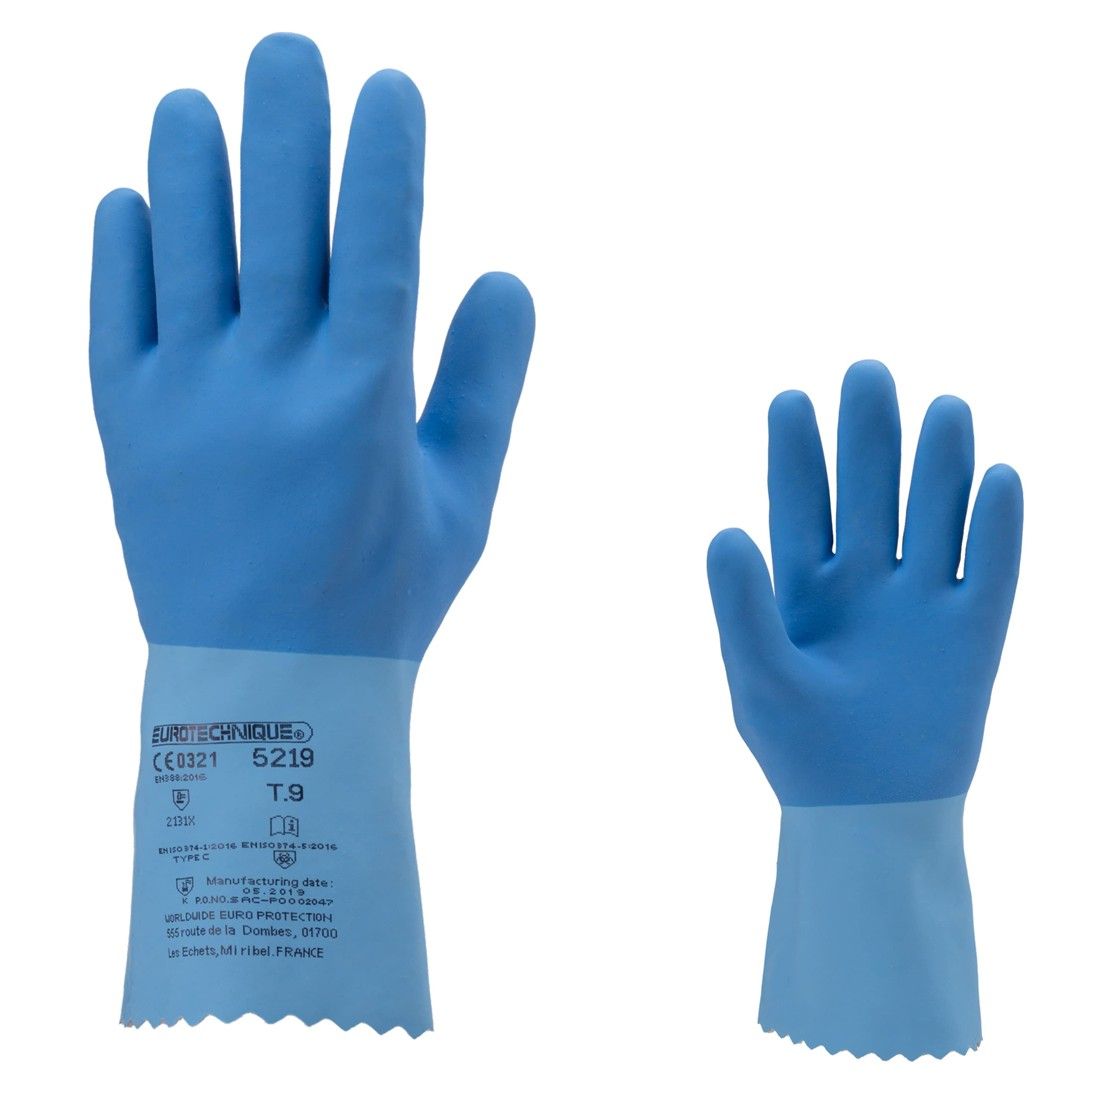 Coverguard - Gants de protection chimique bleu en latex sur jersey